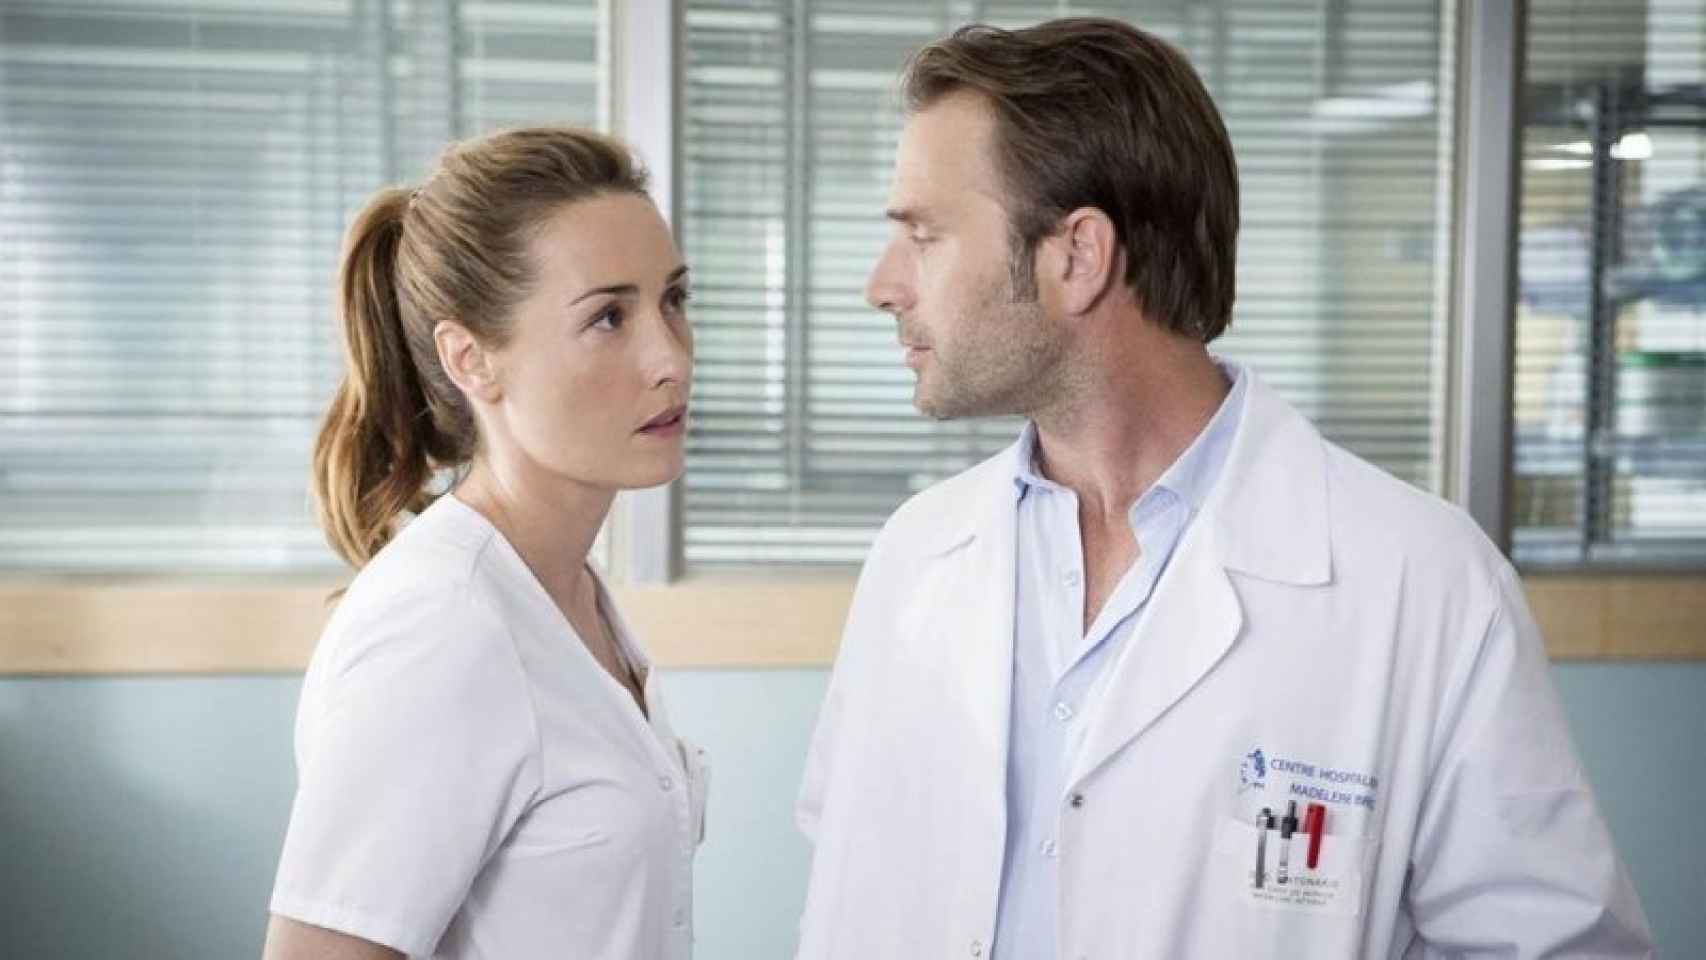 De qué va ‘Nina, una enfermera diferente’, la nueva serie de médicos de Telecinco